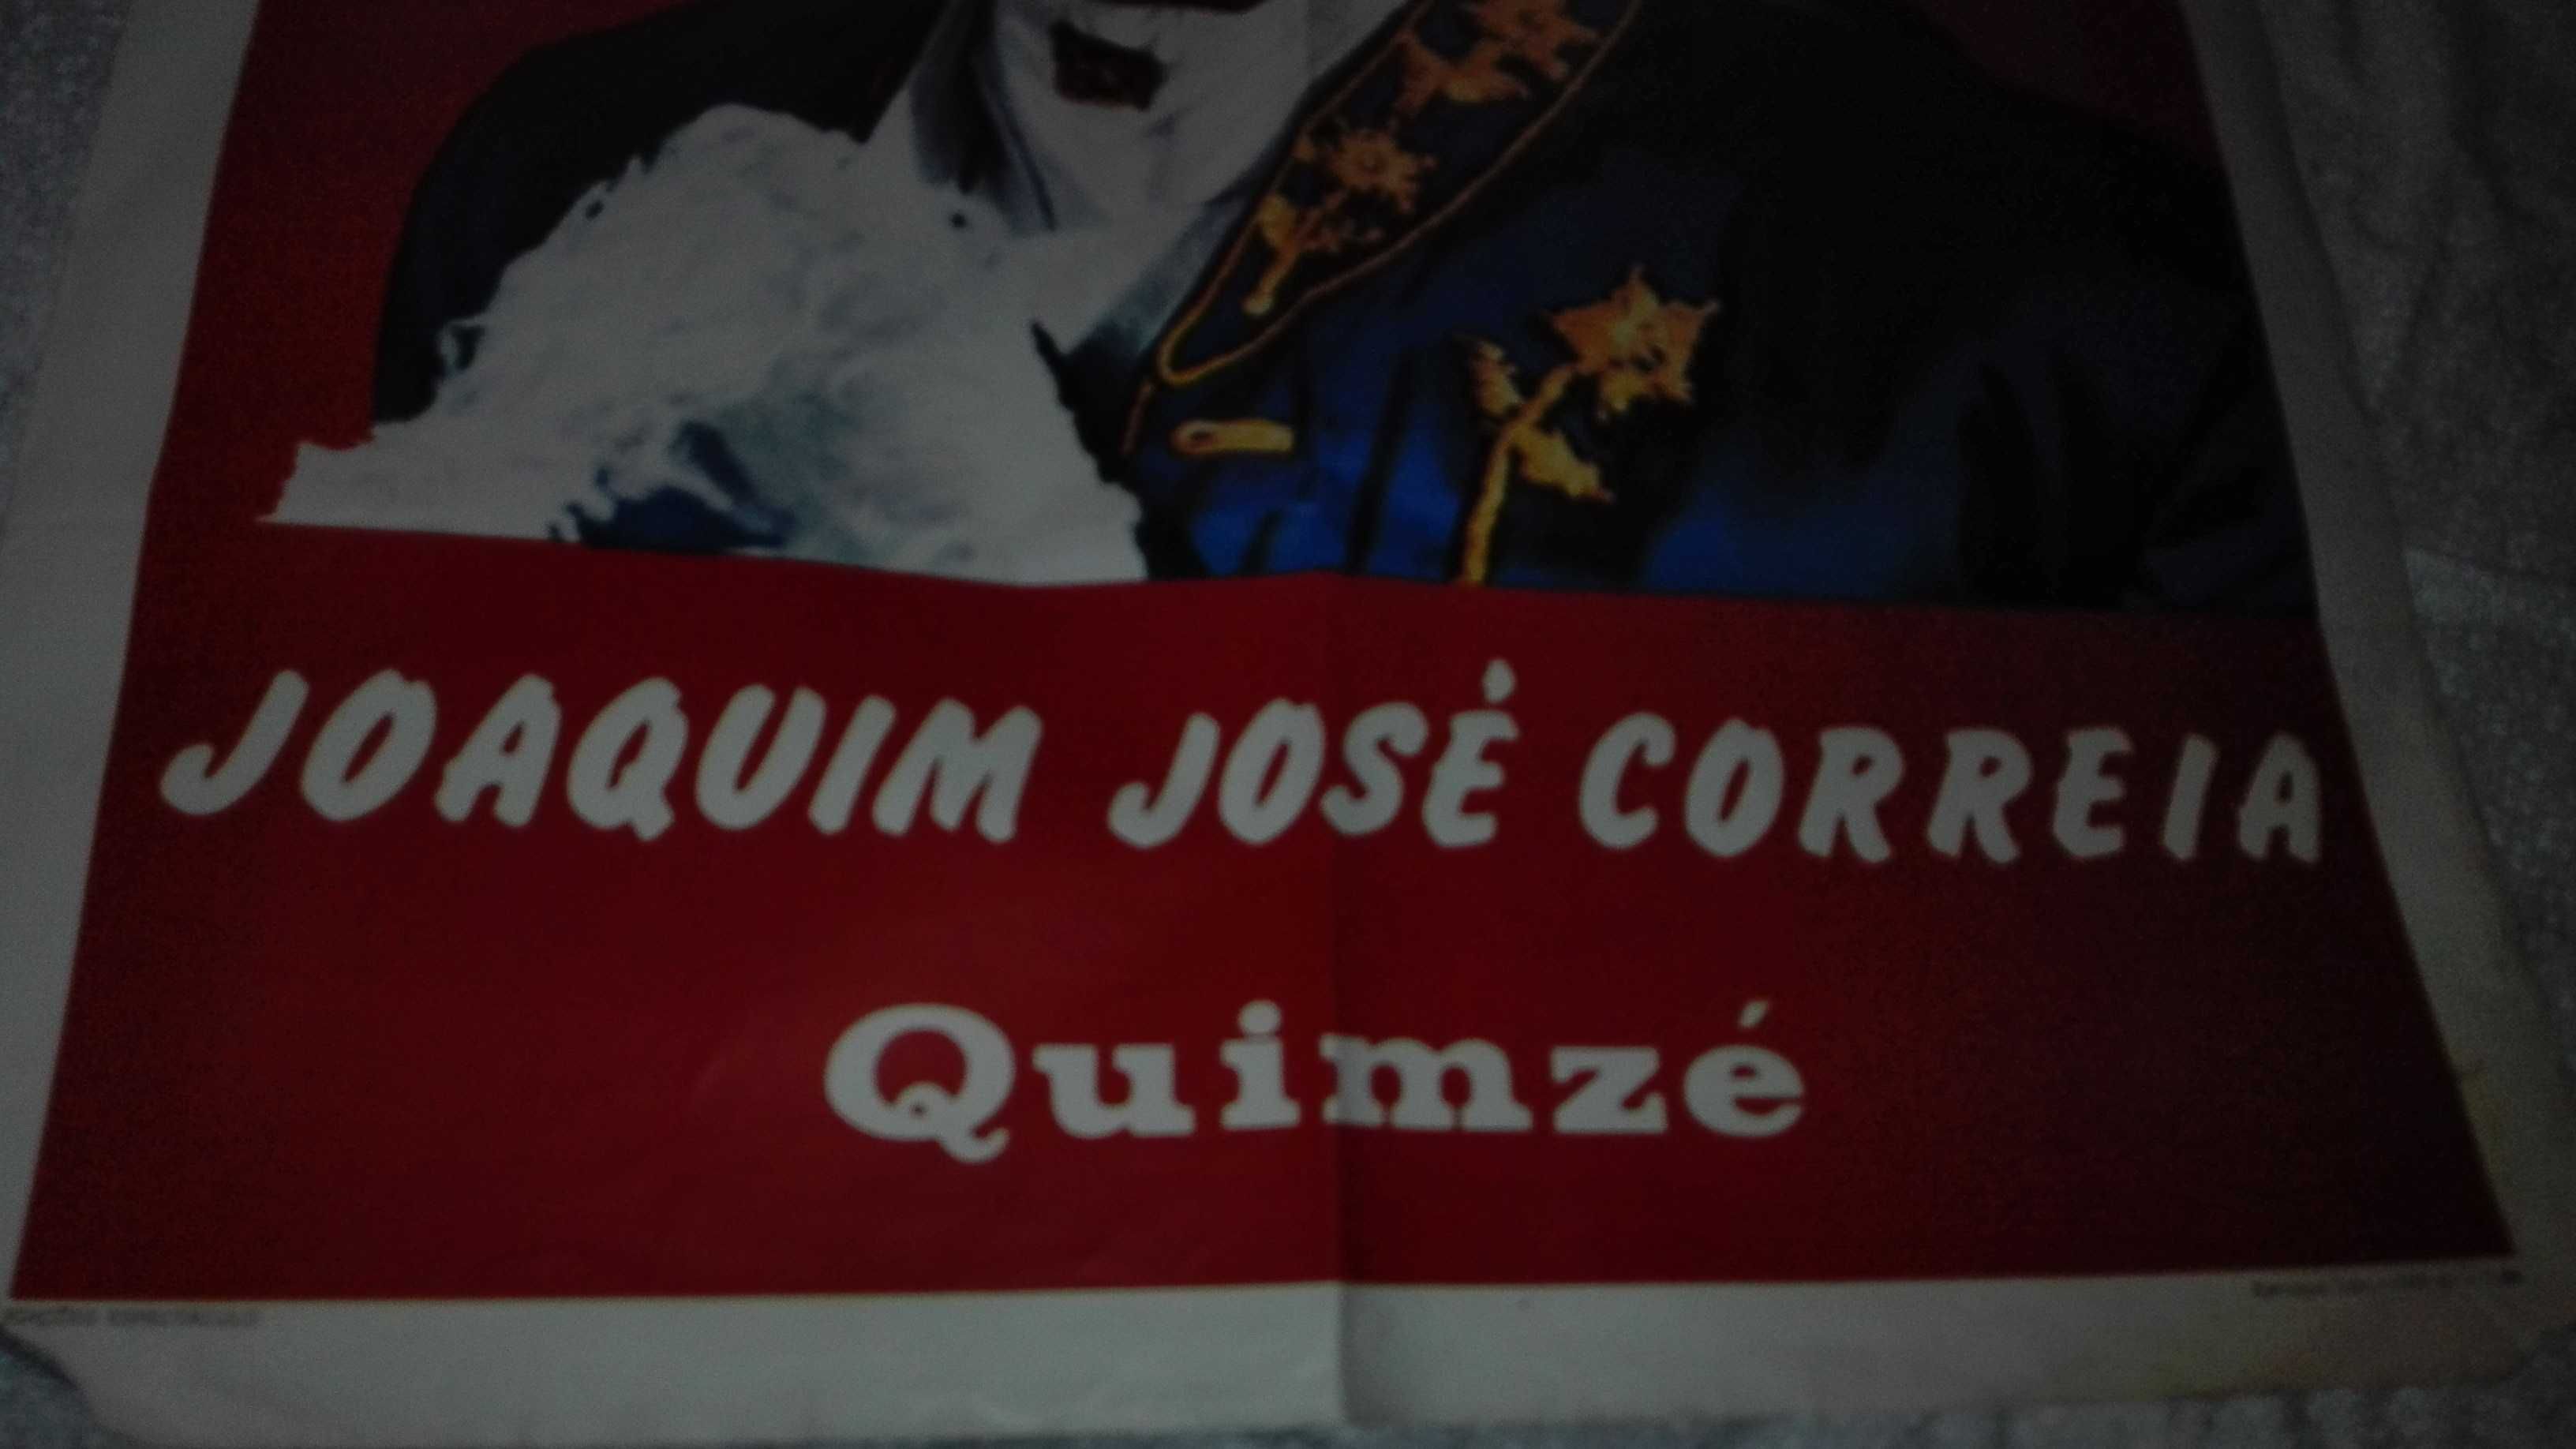 3 posters Campo pequeno e 1- Joaquim J. correia Quim zé- originais